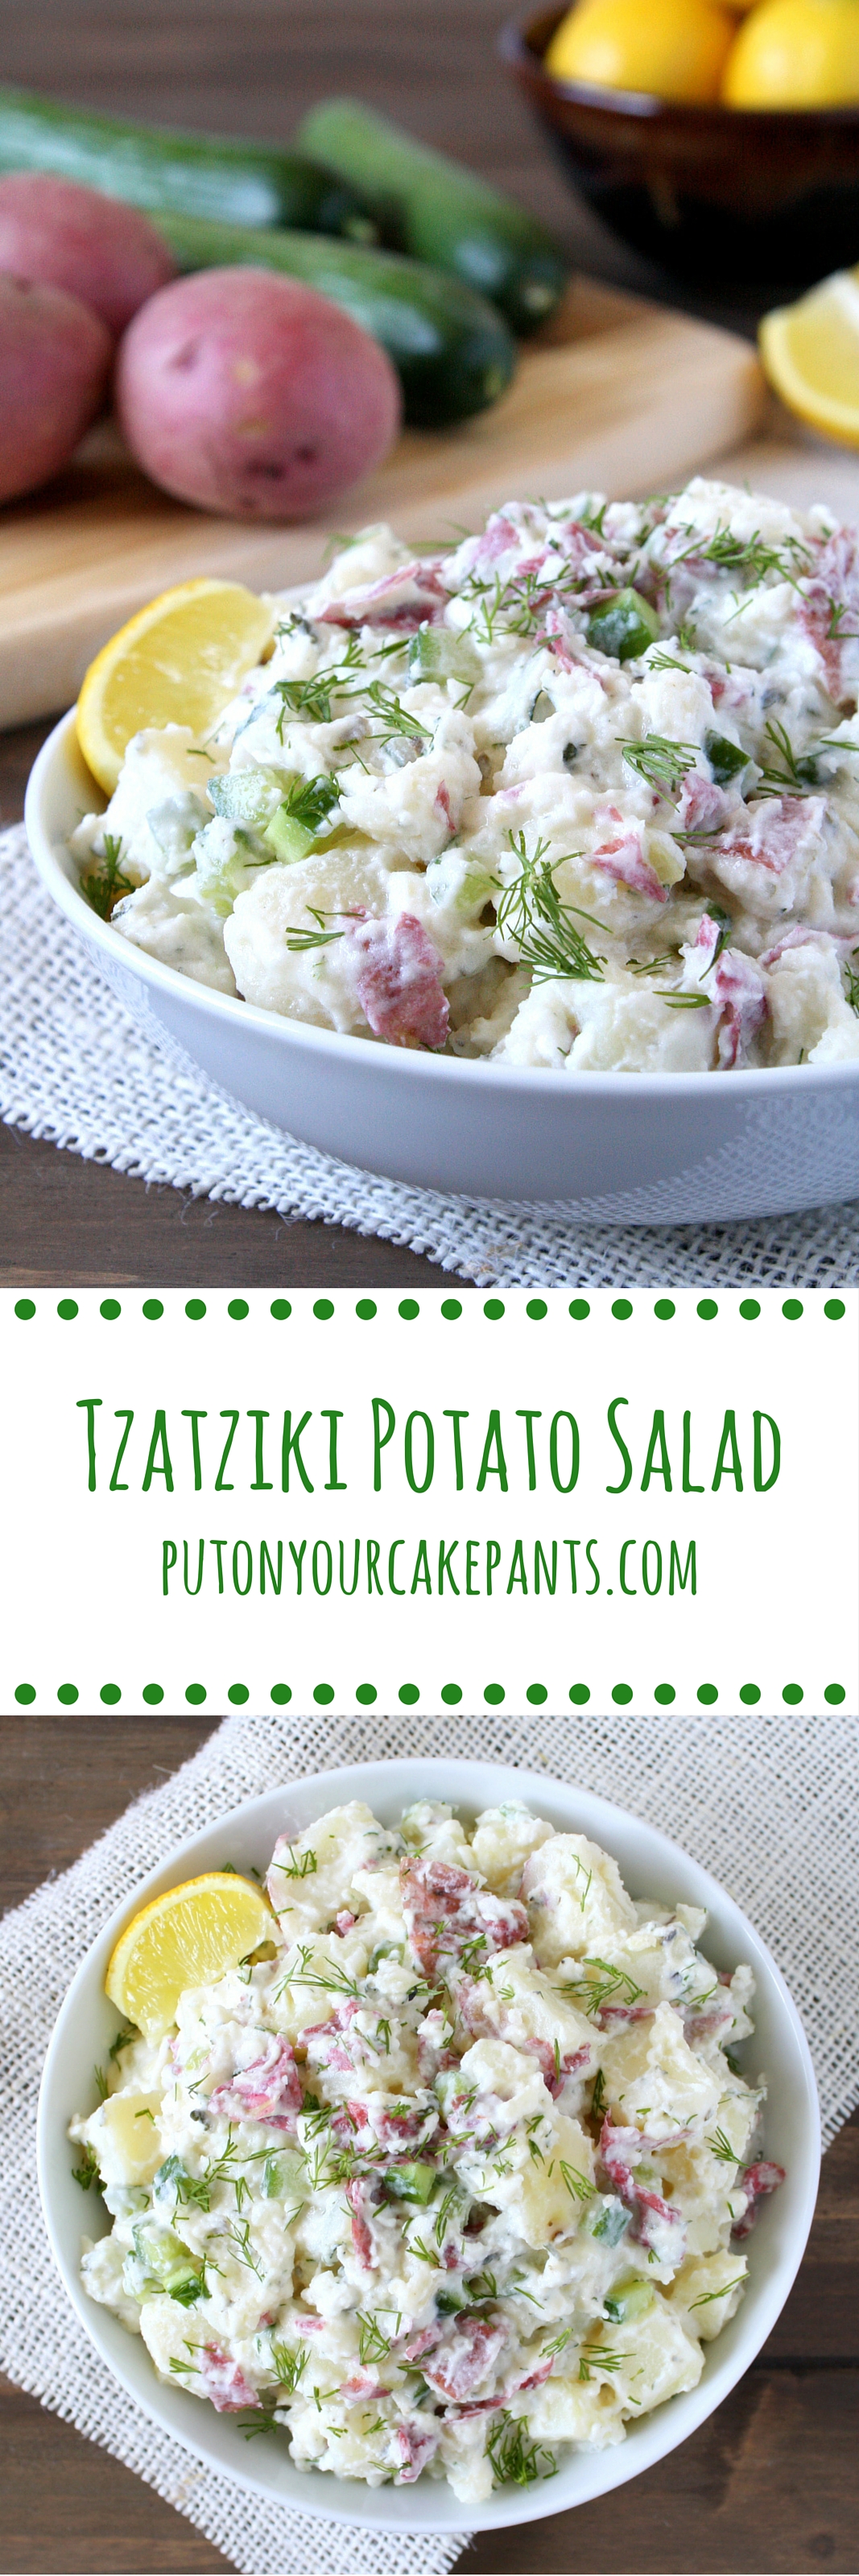 tzatziki potato salad